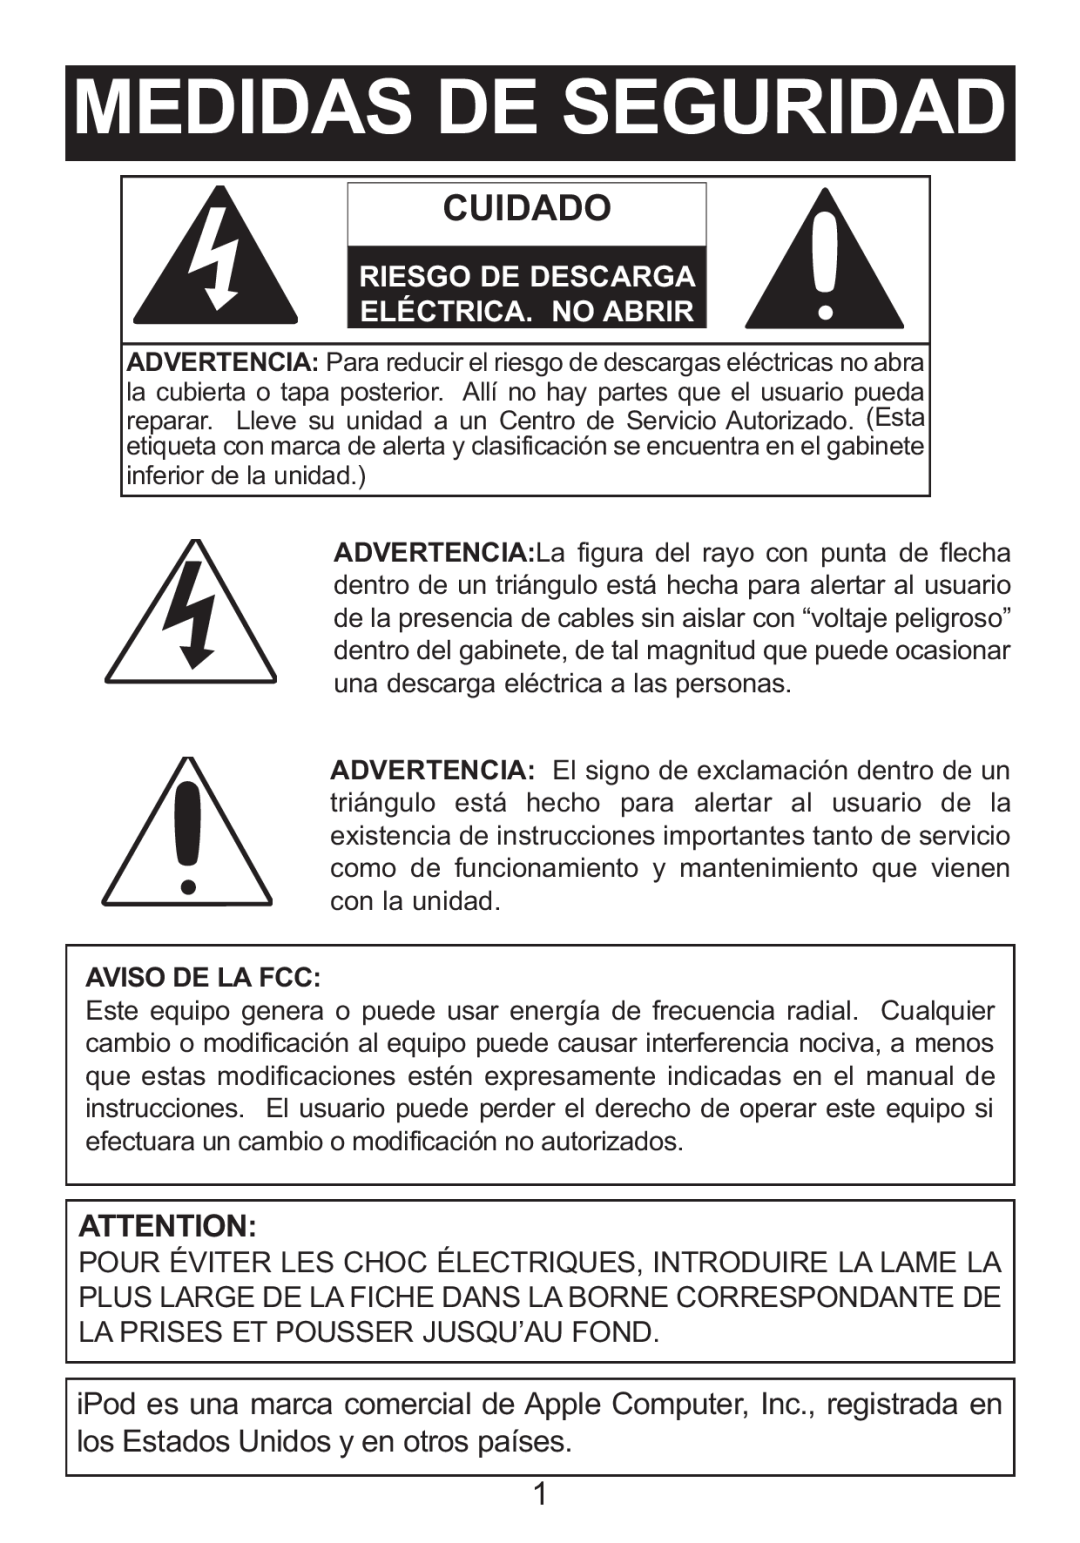 Memorex M12001 manual Medidas De Seguridad, Cuidado, Riesgo De Descarga Eléctrica. No Abrir 